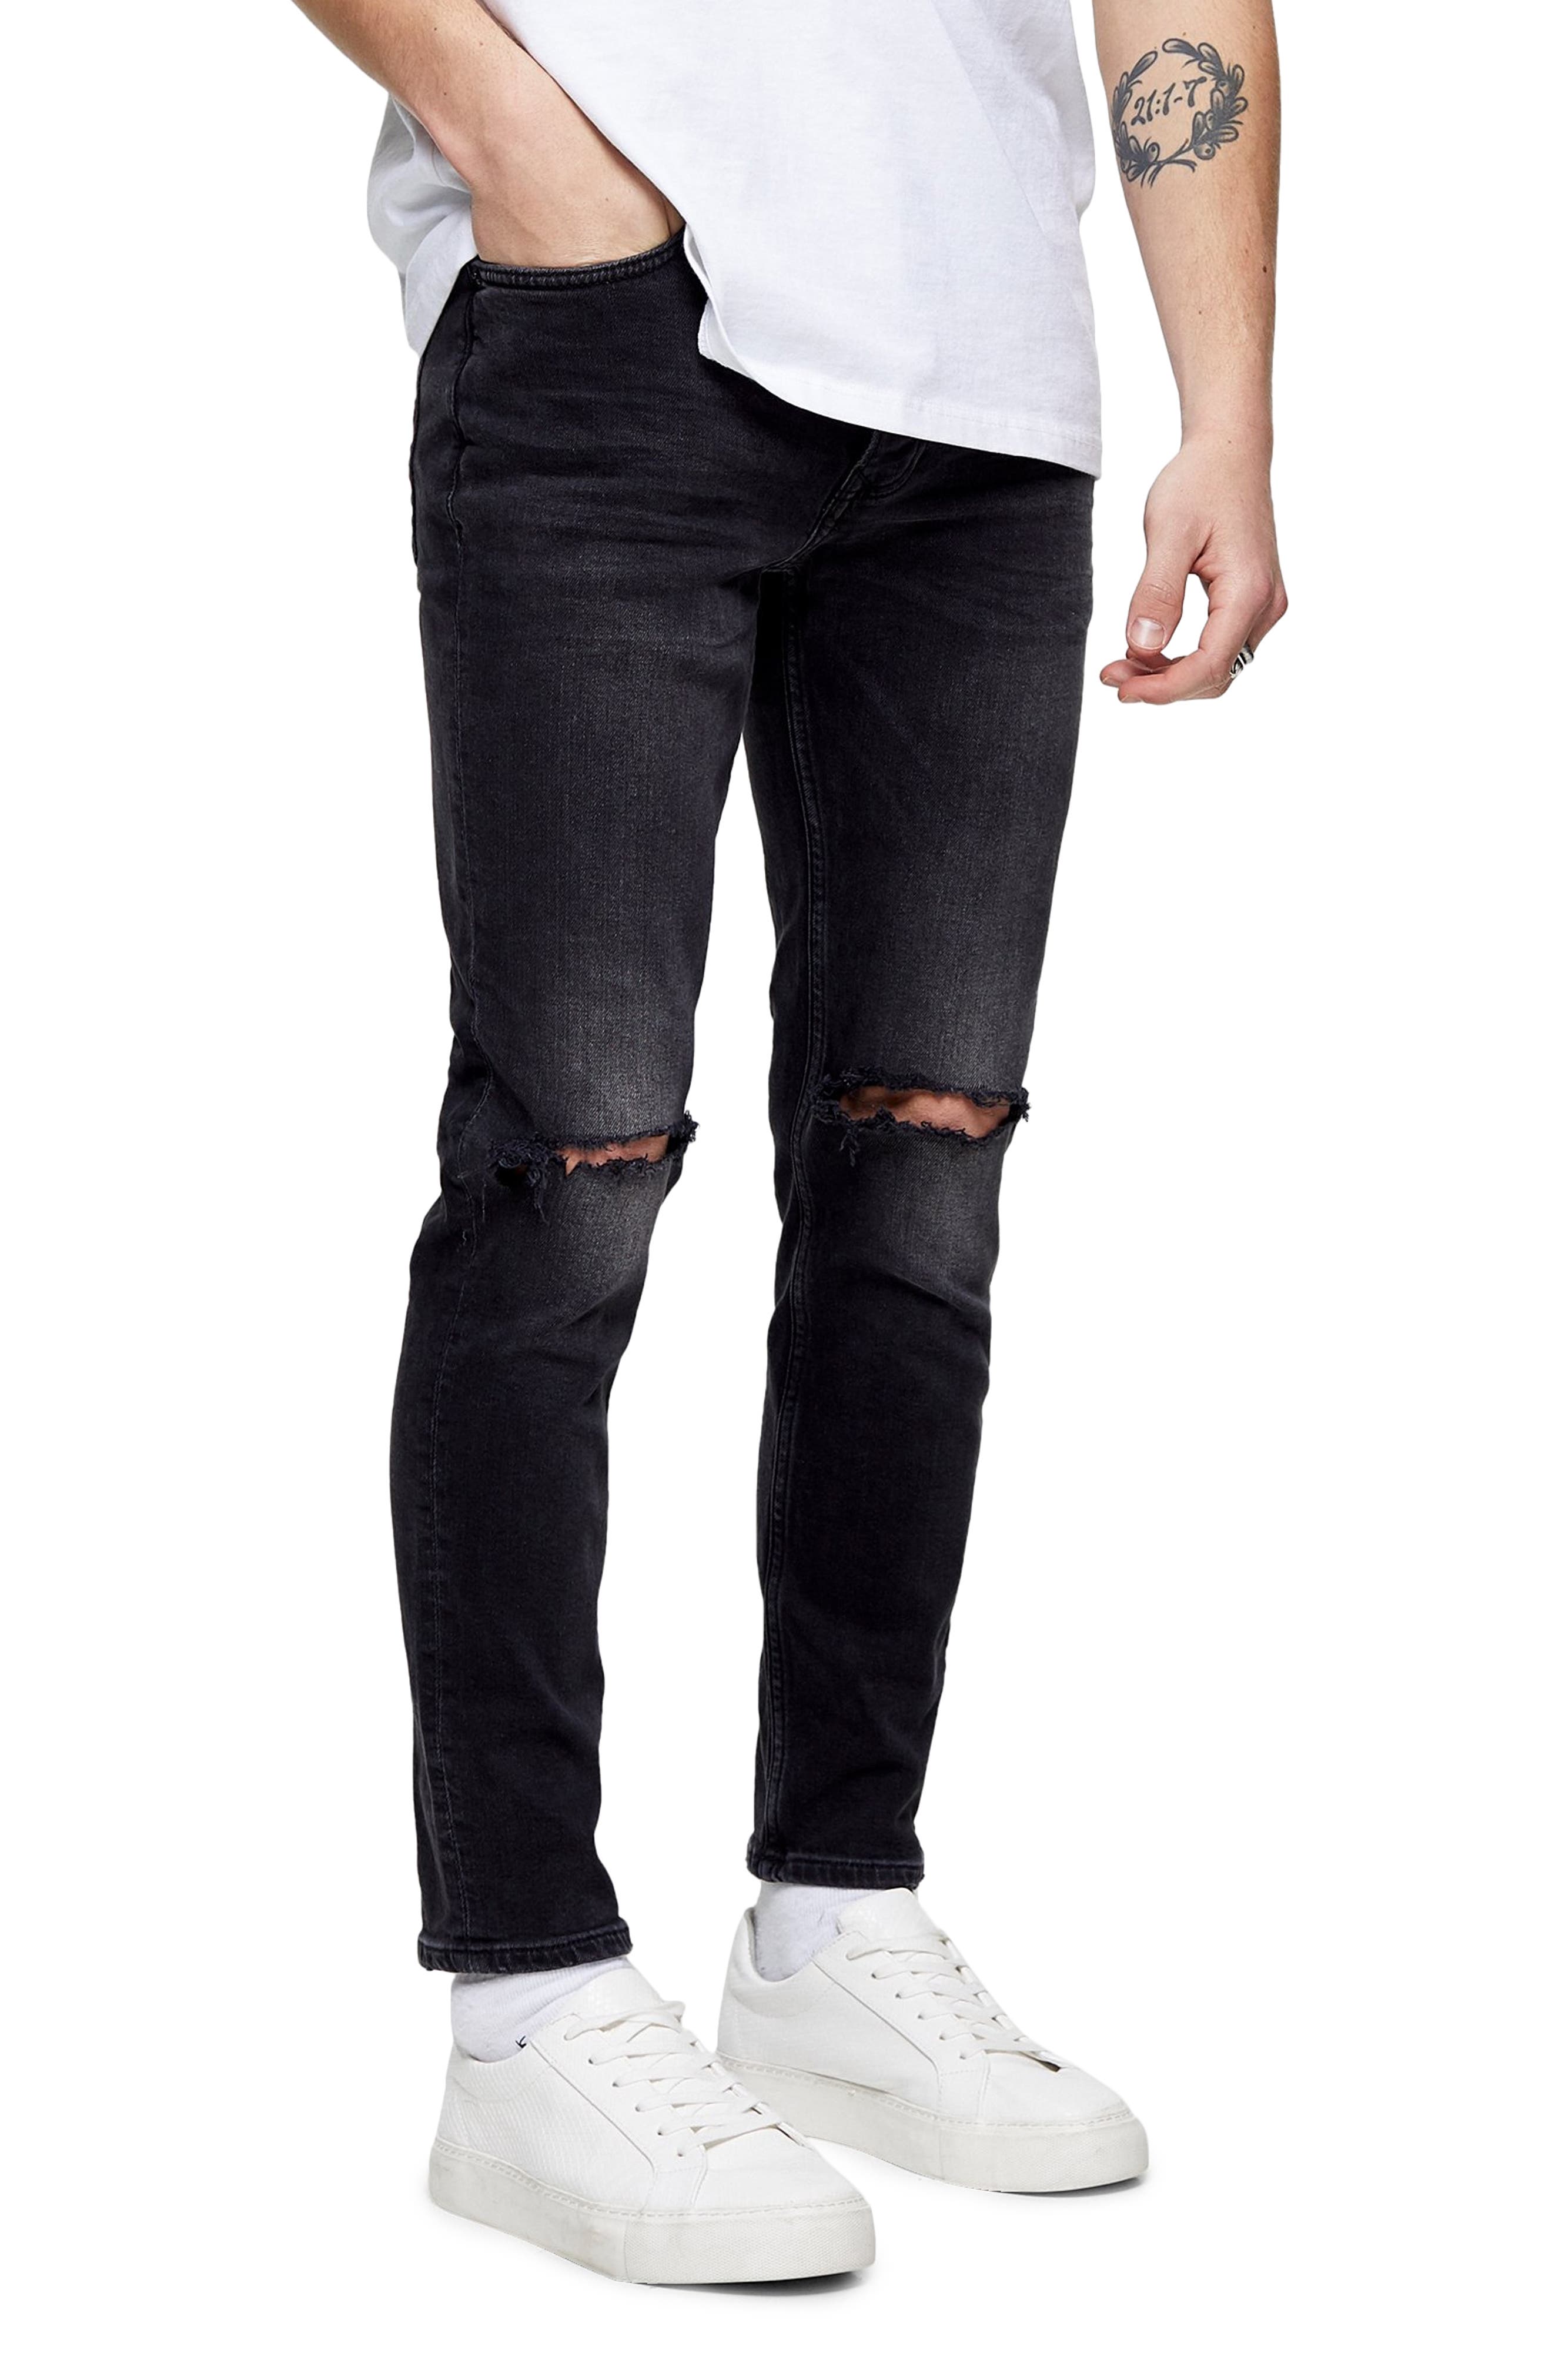 nordstrom black jeans